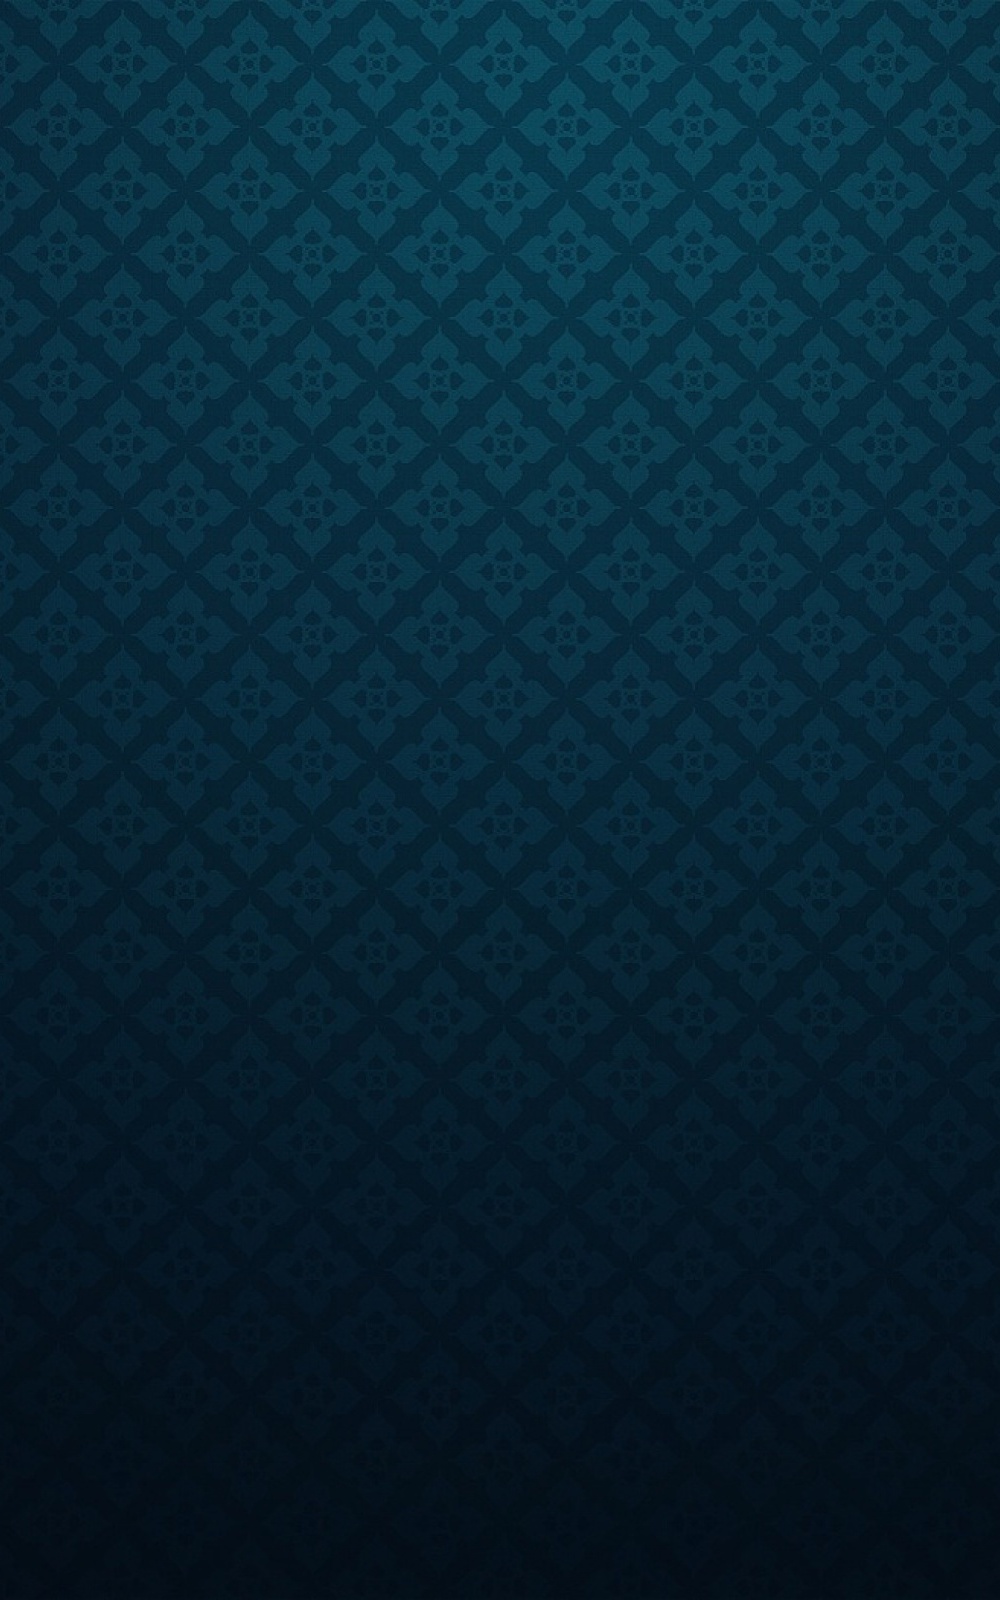 HD wallpaper: A blue bubble wrap pattern background., android wallpapers,  android backgrounds | Wallpaper Flare